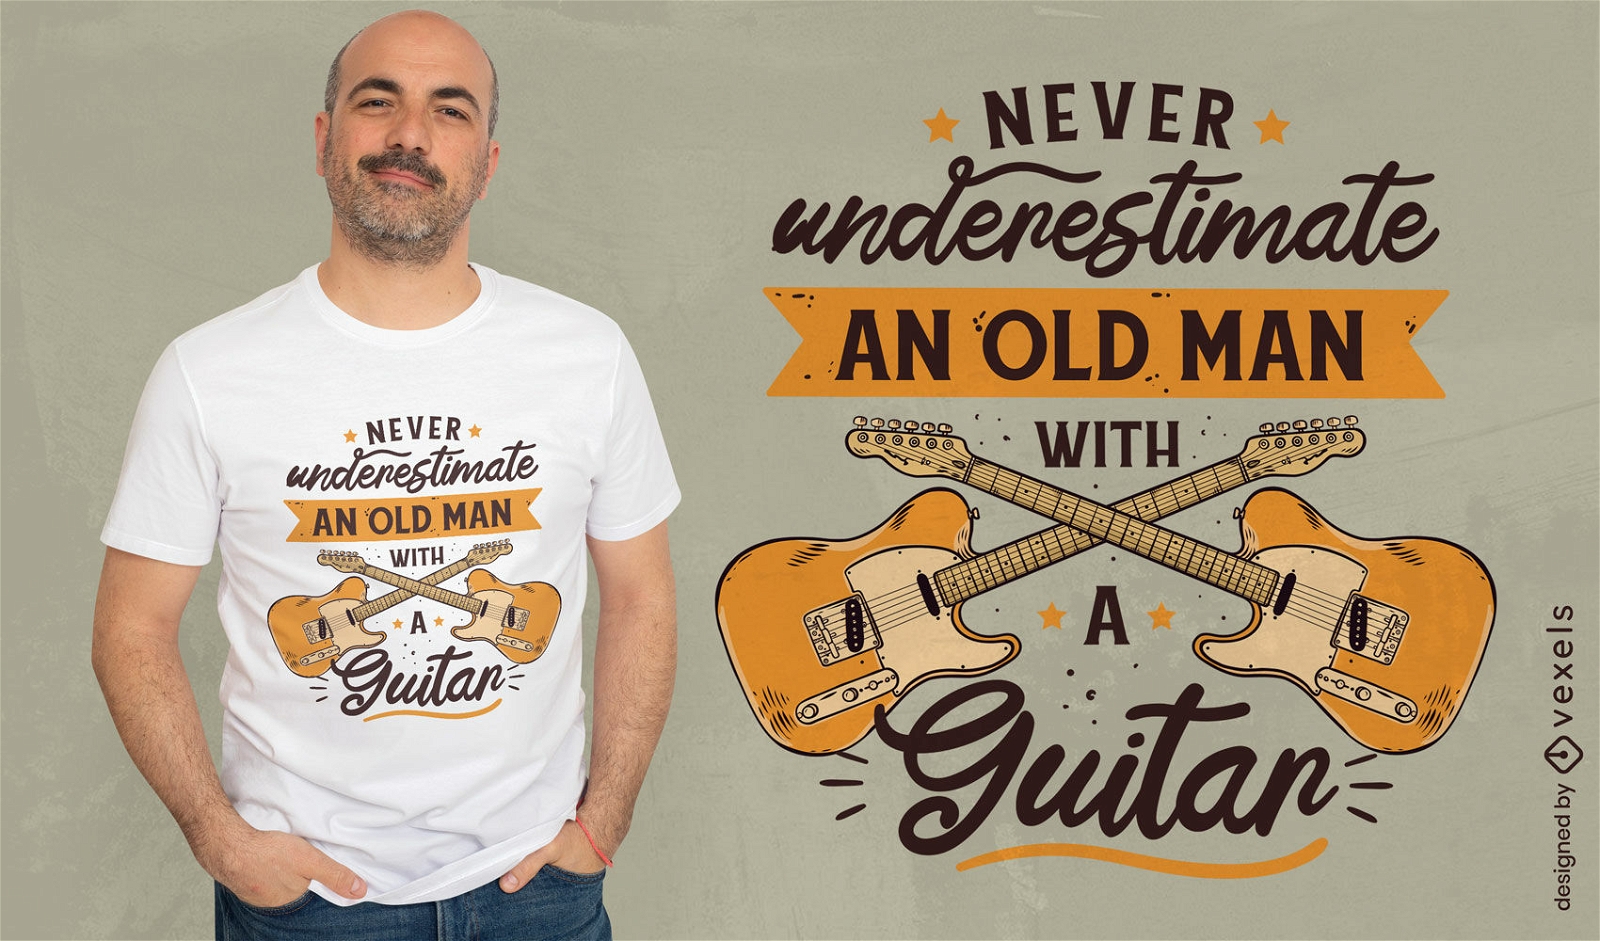 Velho com design de t-shirt de cita??o de guitarra